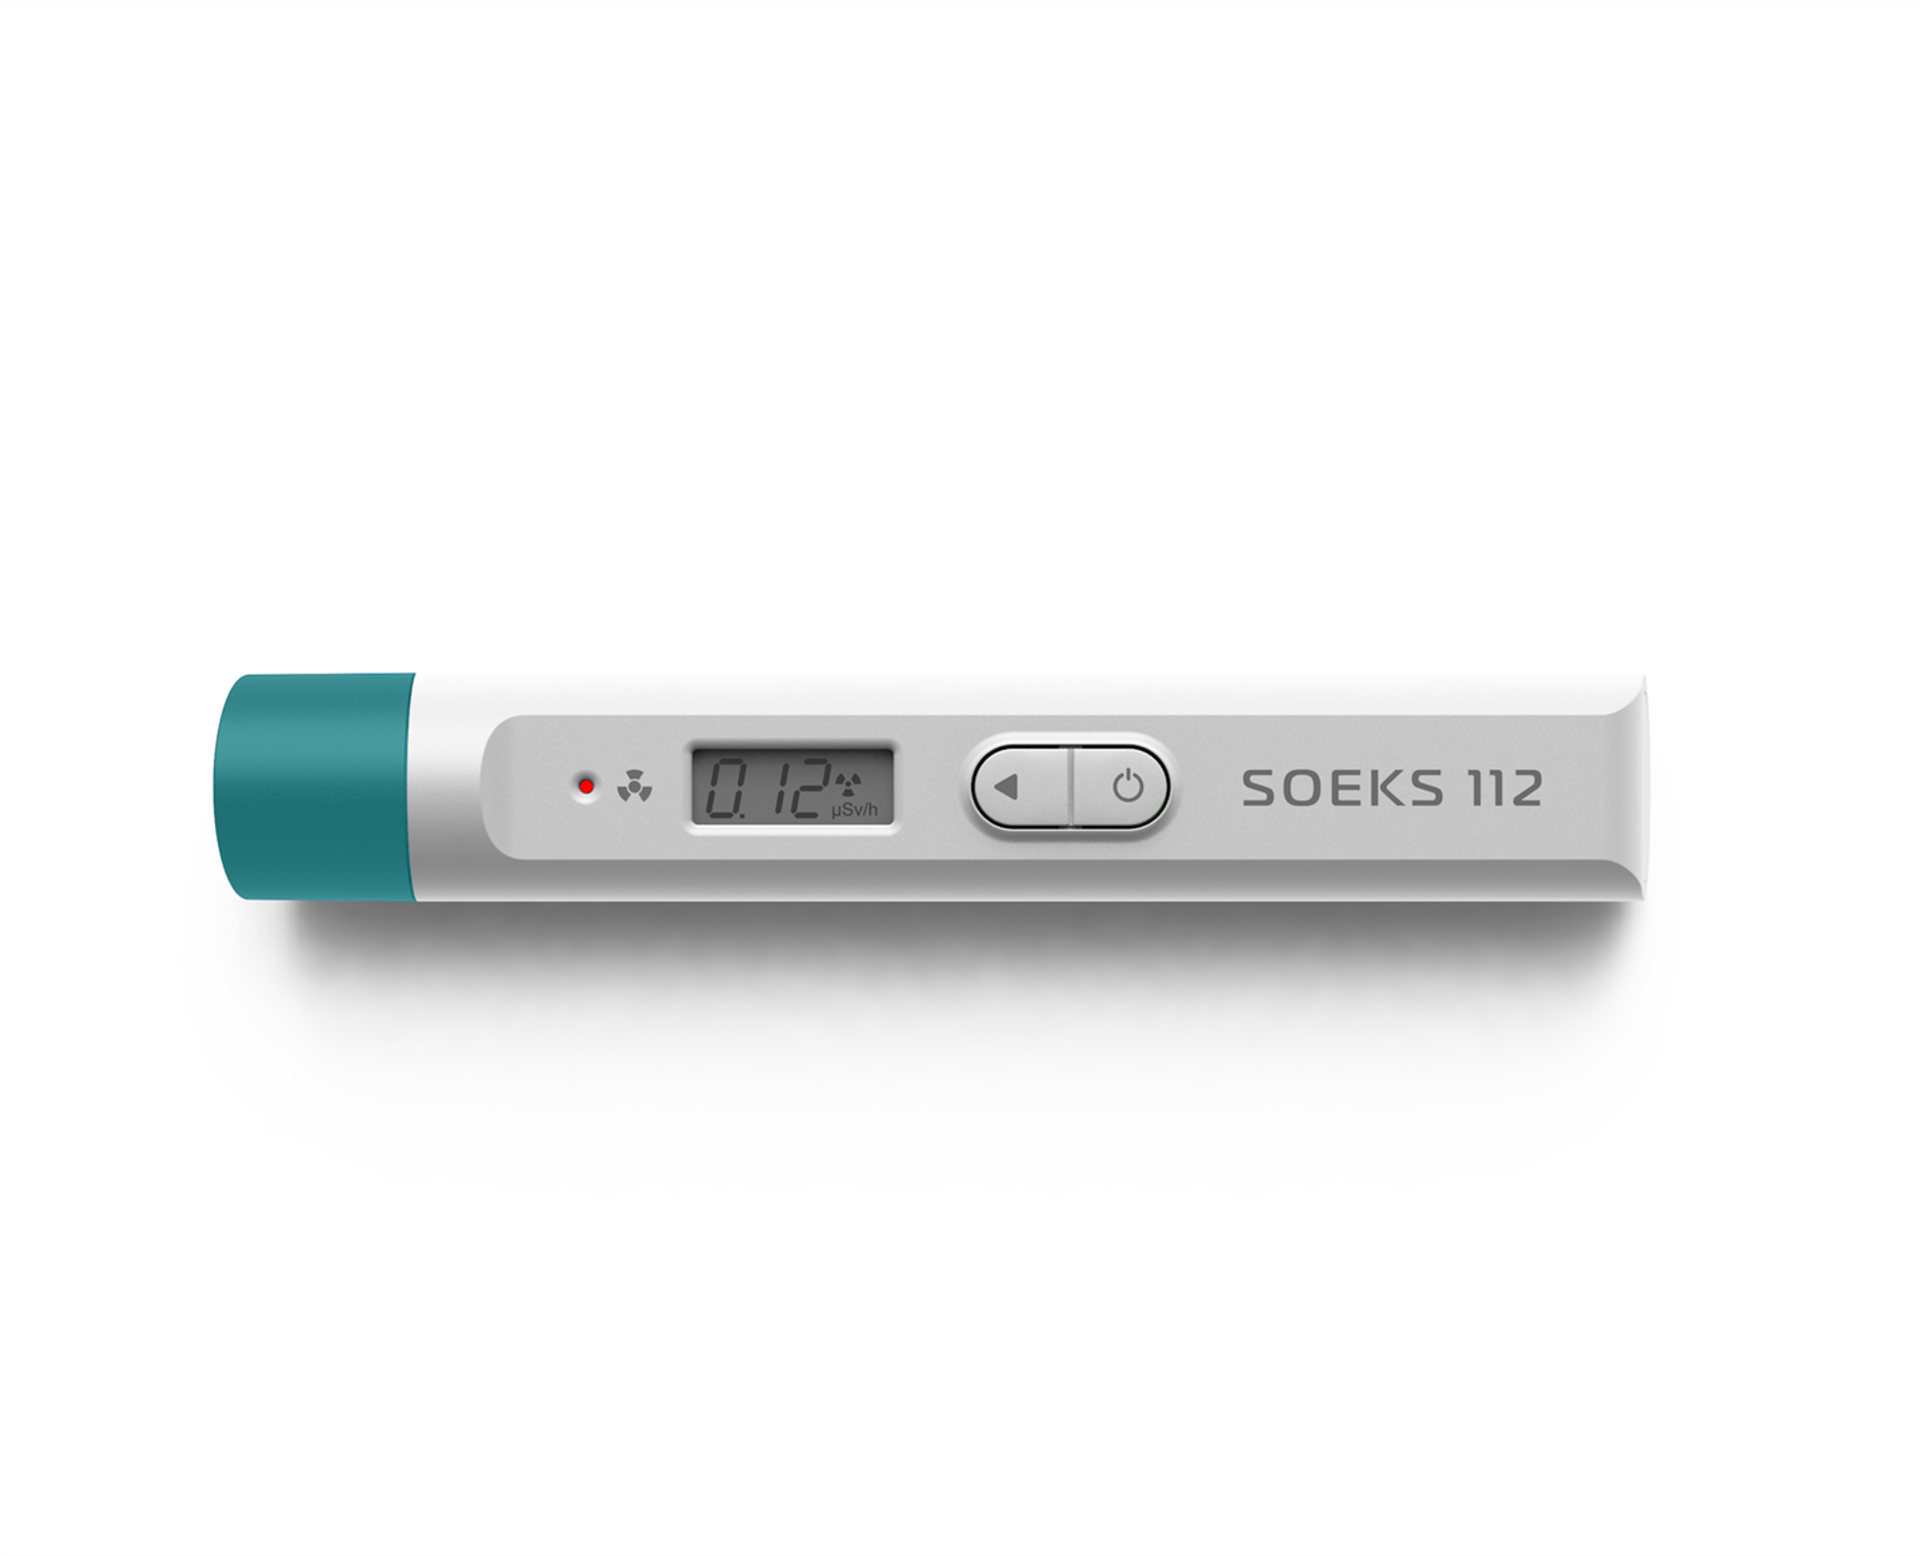 SOEKS USA - Geiger Counters & Nitrate Food Testers